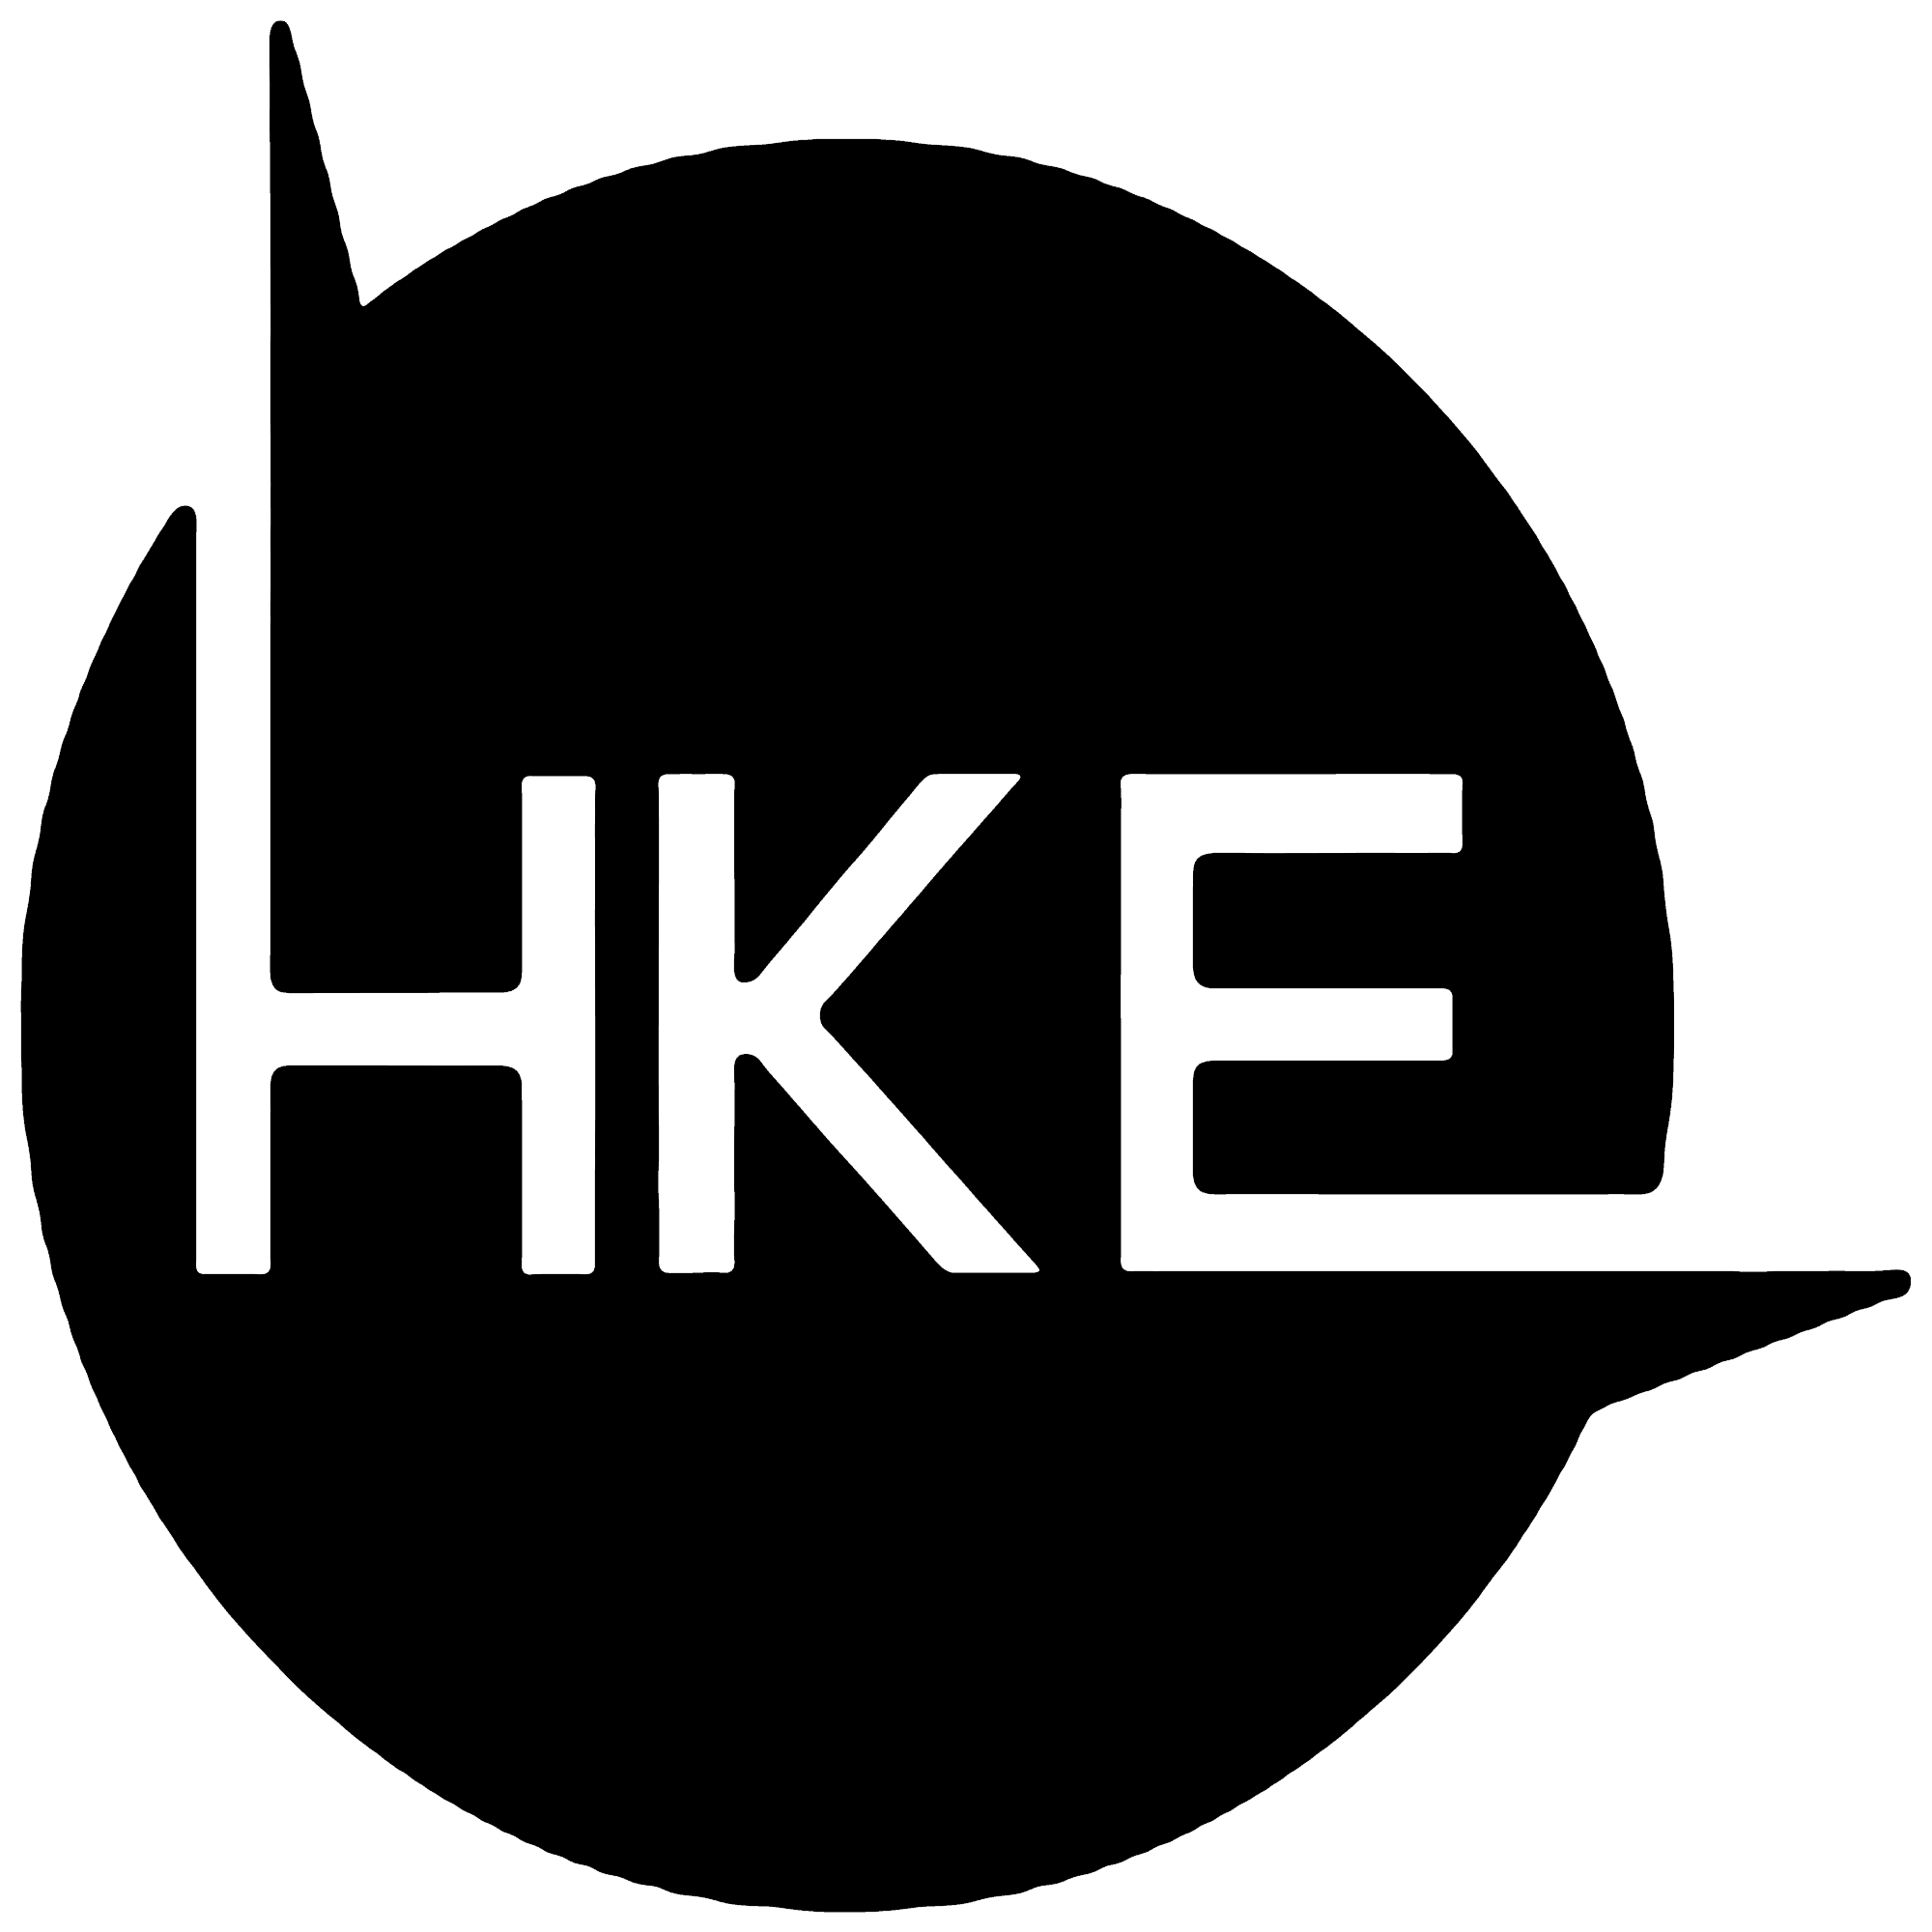 hke logo 